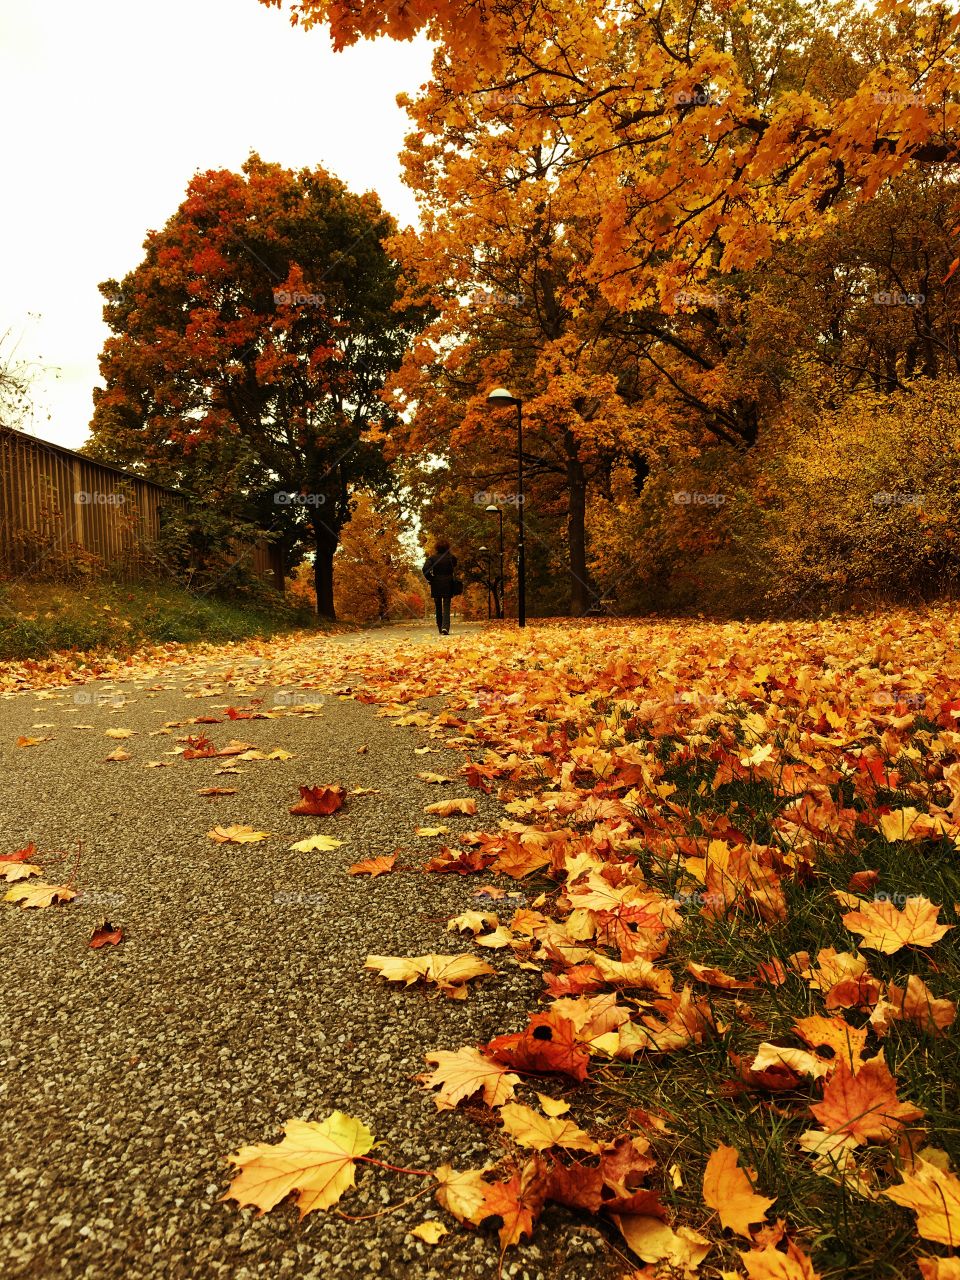 Walking alone in autumn 